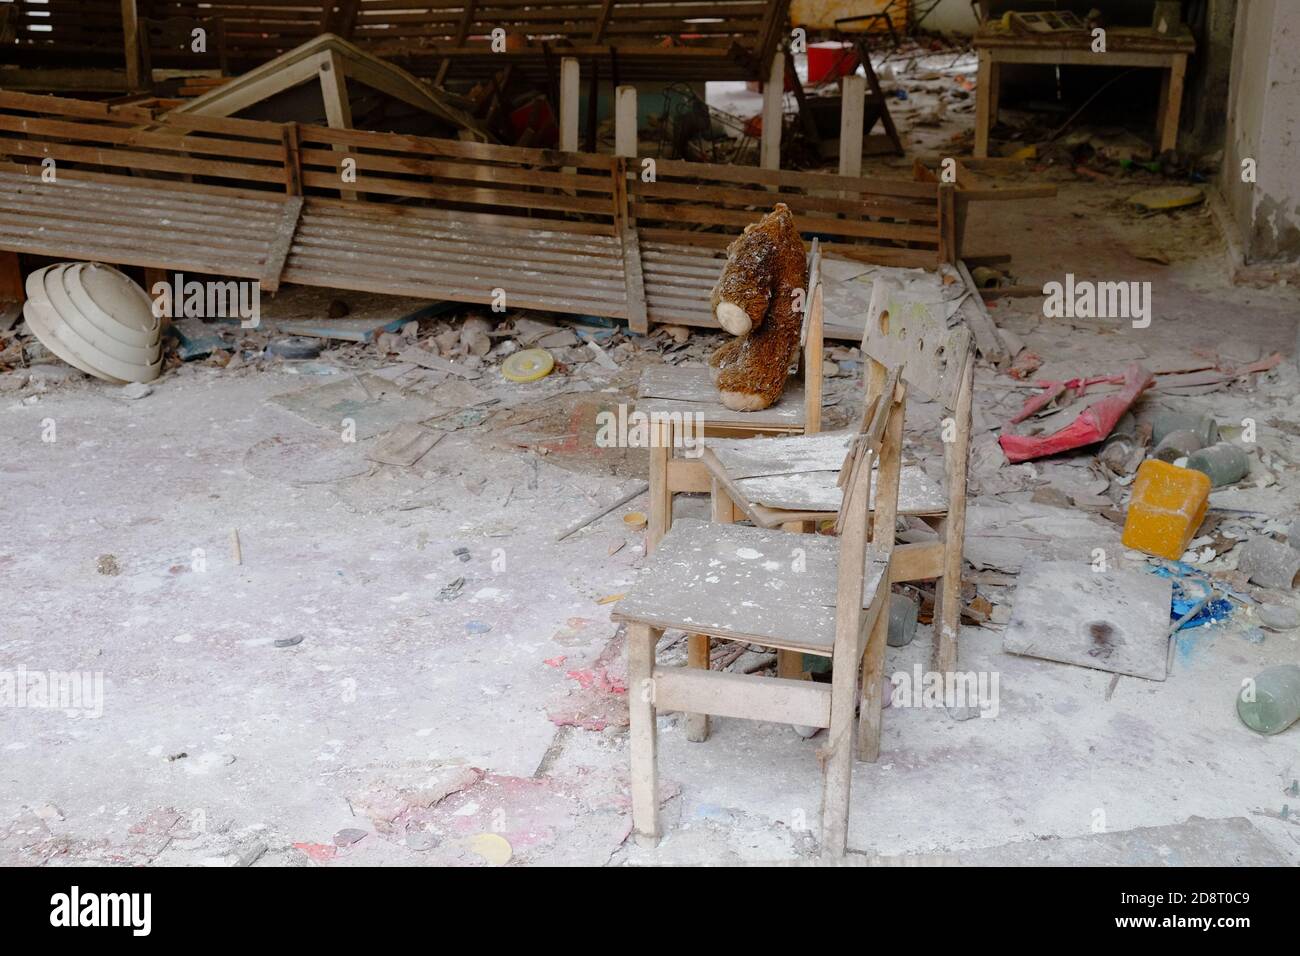 Giocattolo peluche sporco sulla sedia. Un orsacchiotto senza testa in un asilo abbandonato a Pipyat. Foto Stock